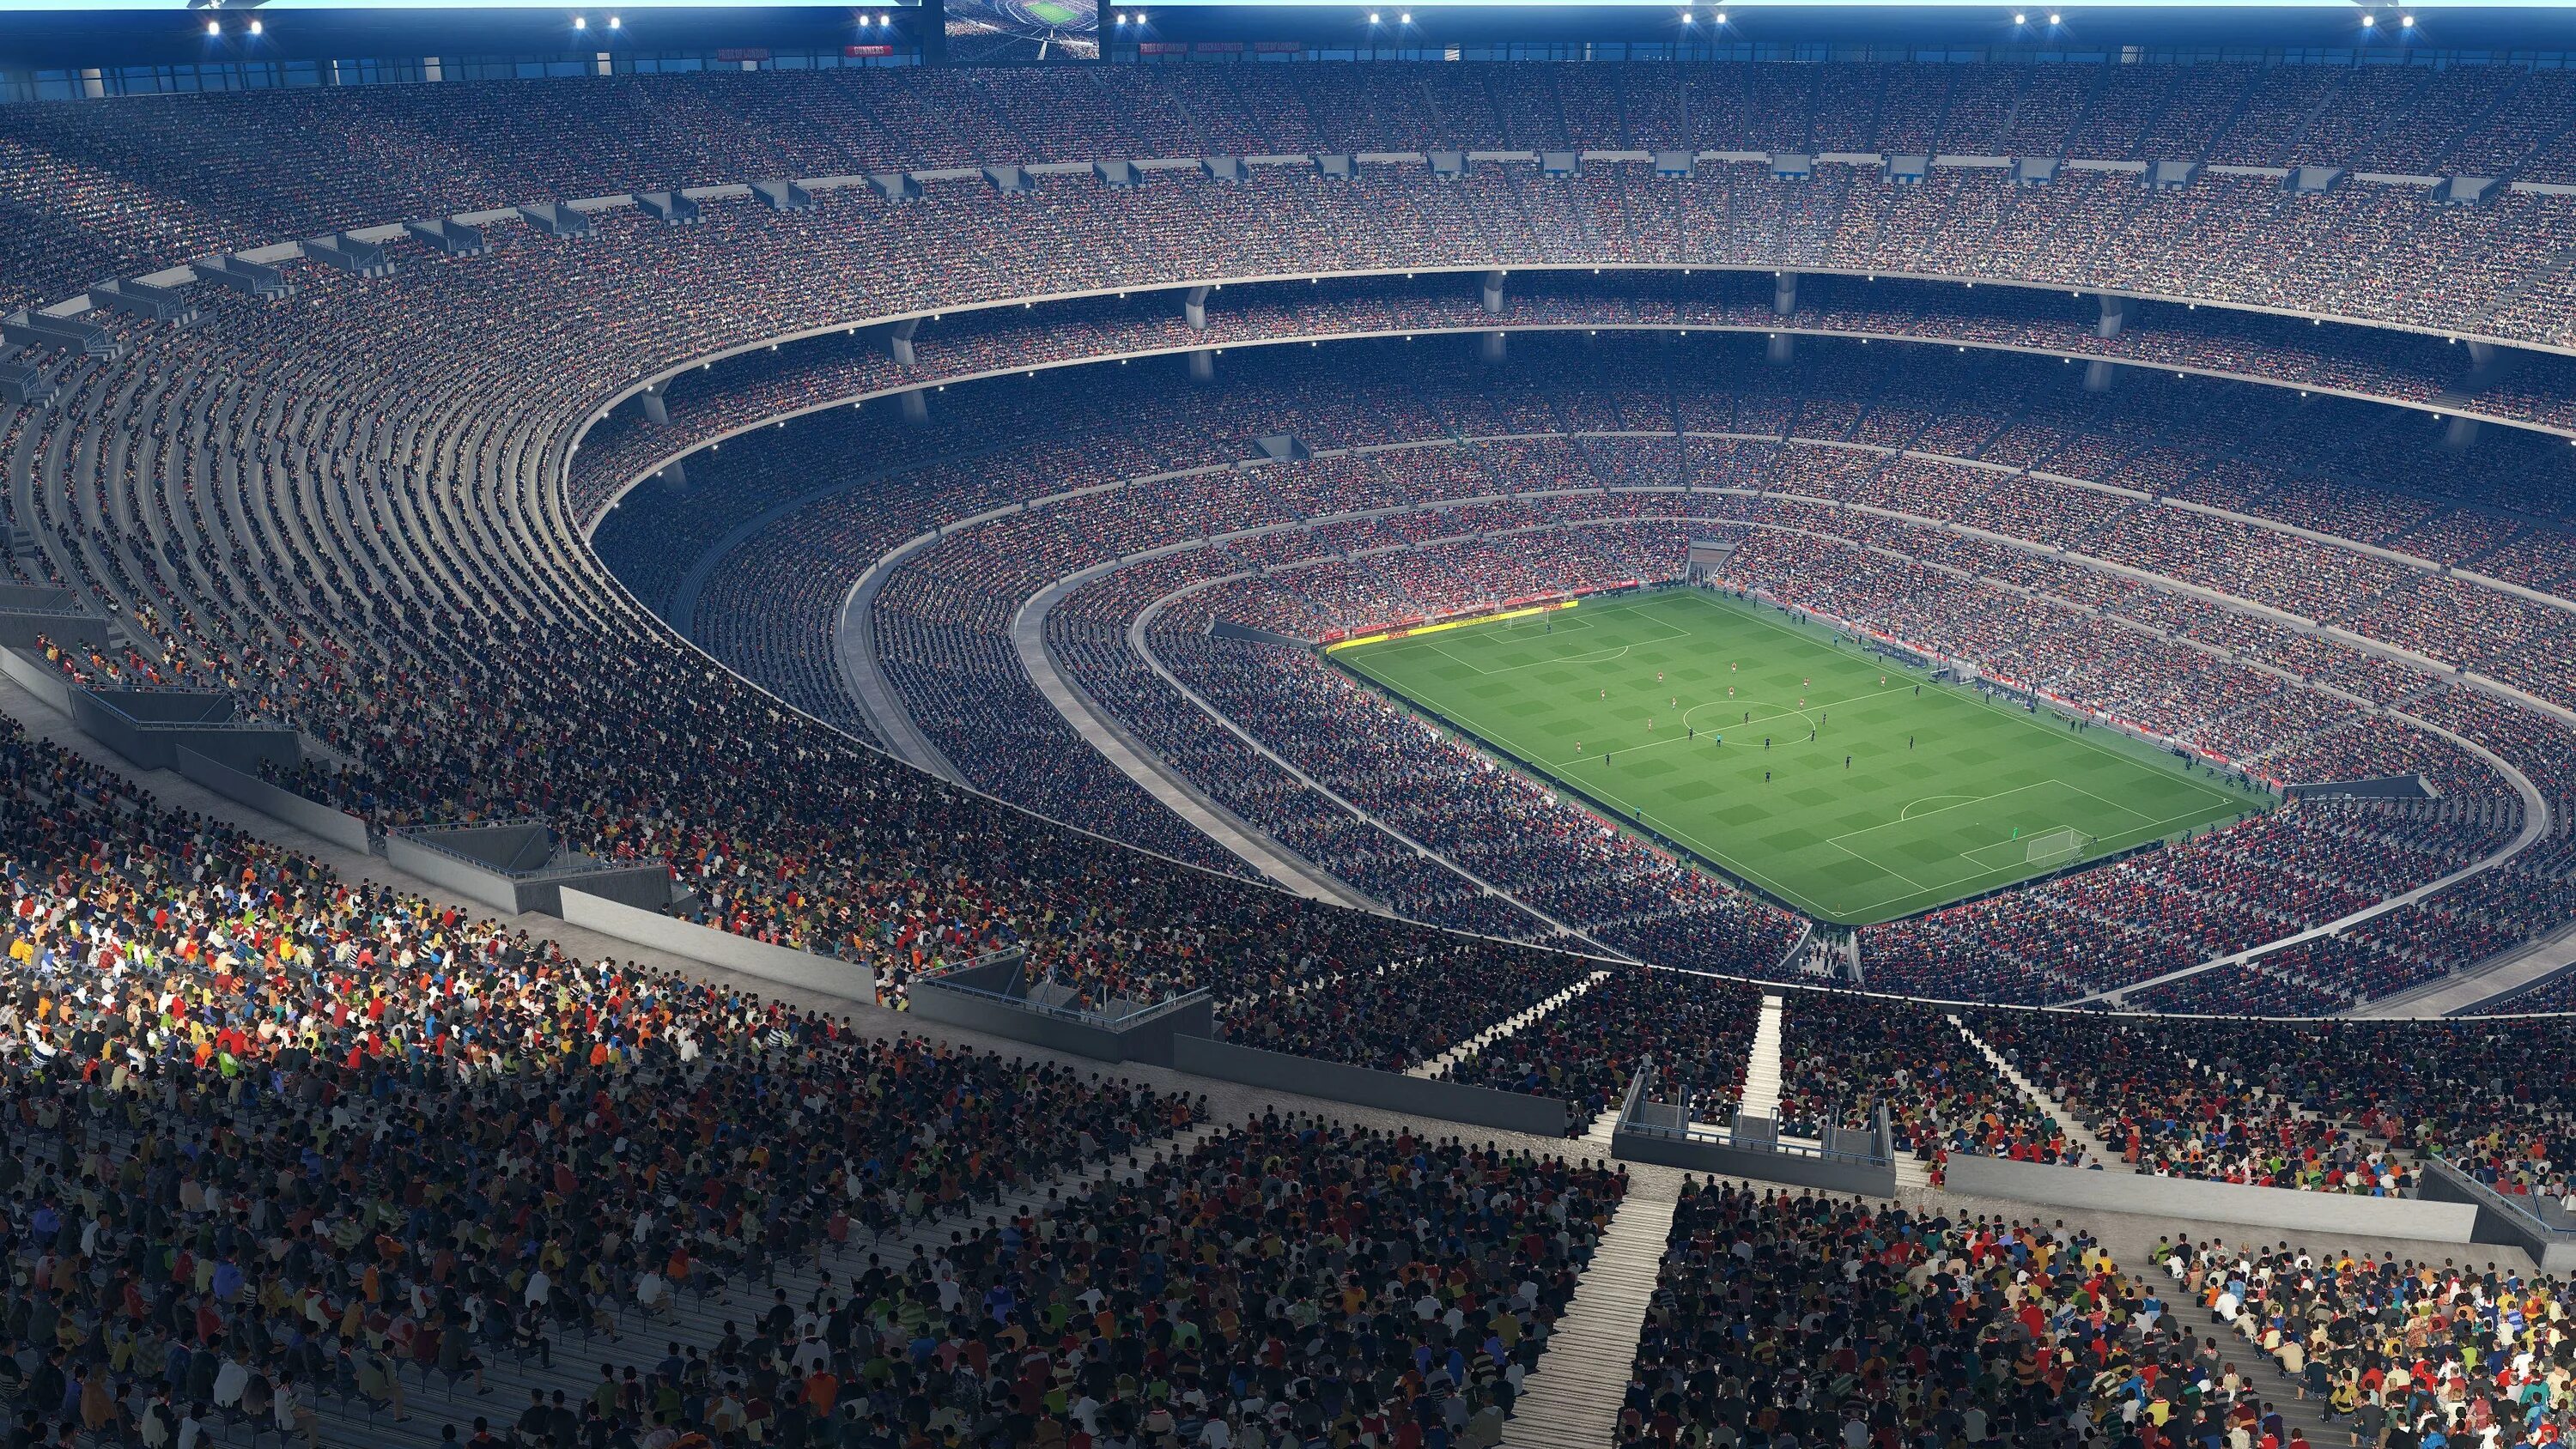 Камп ноу стадион 2020. Ювентус Стэдиум стадион лига чемпионов. Camp nou Barcelona. Камп ноу стадион фото.